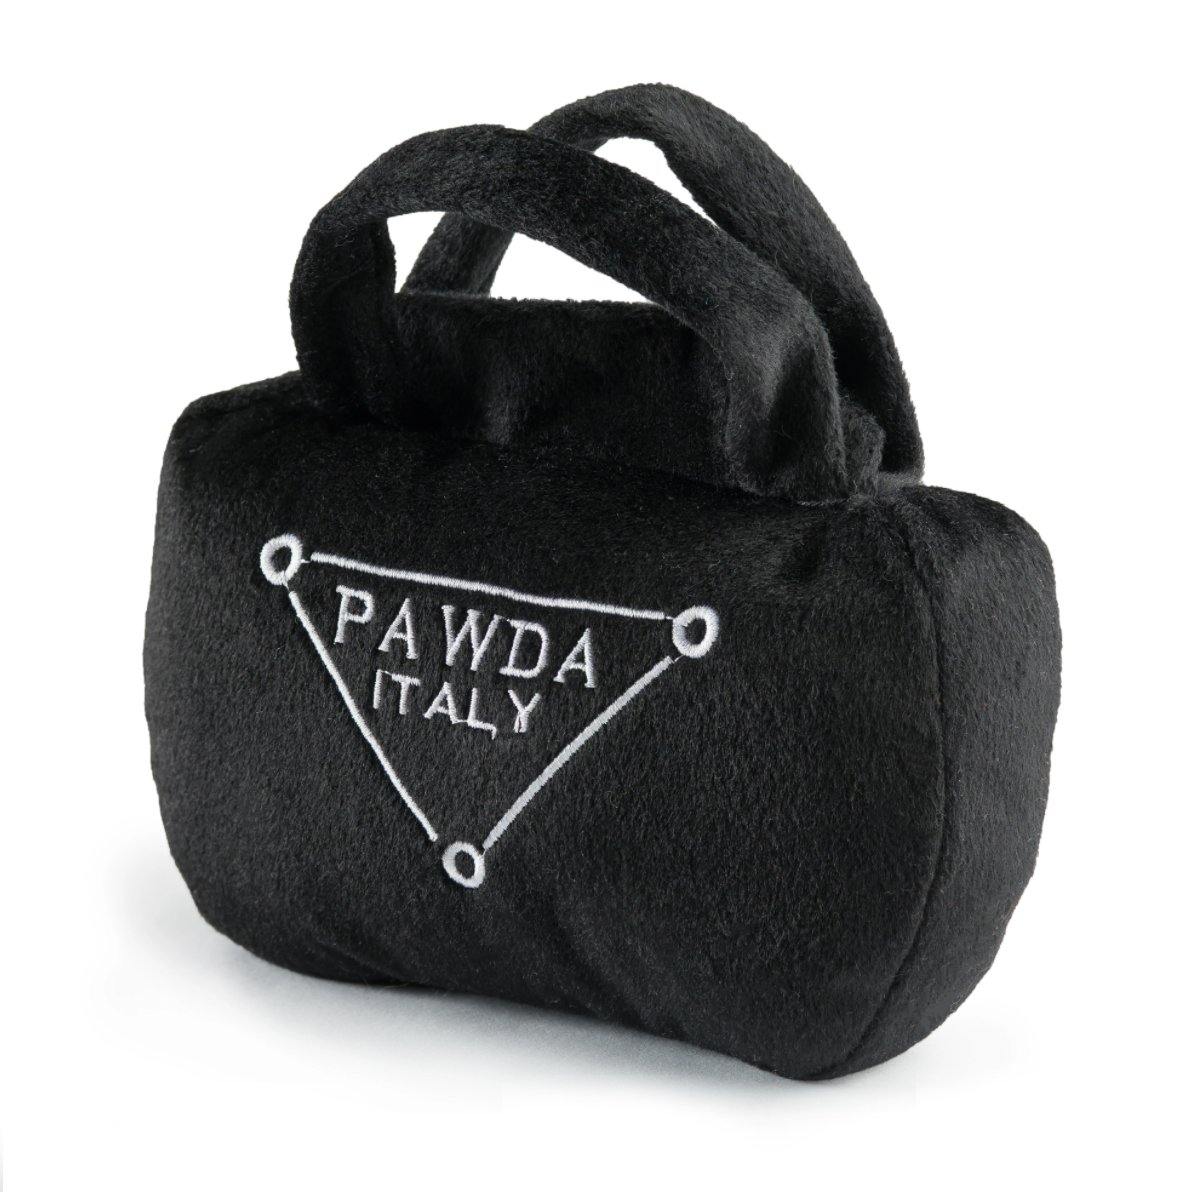 Pawda handbag - Pet-à-Porter